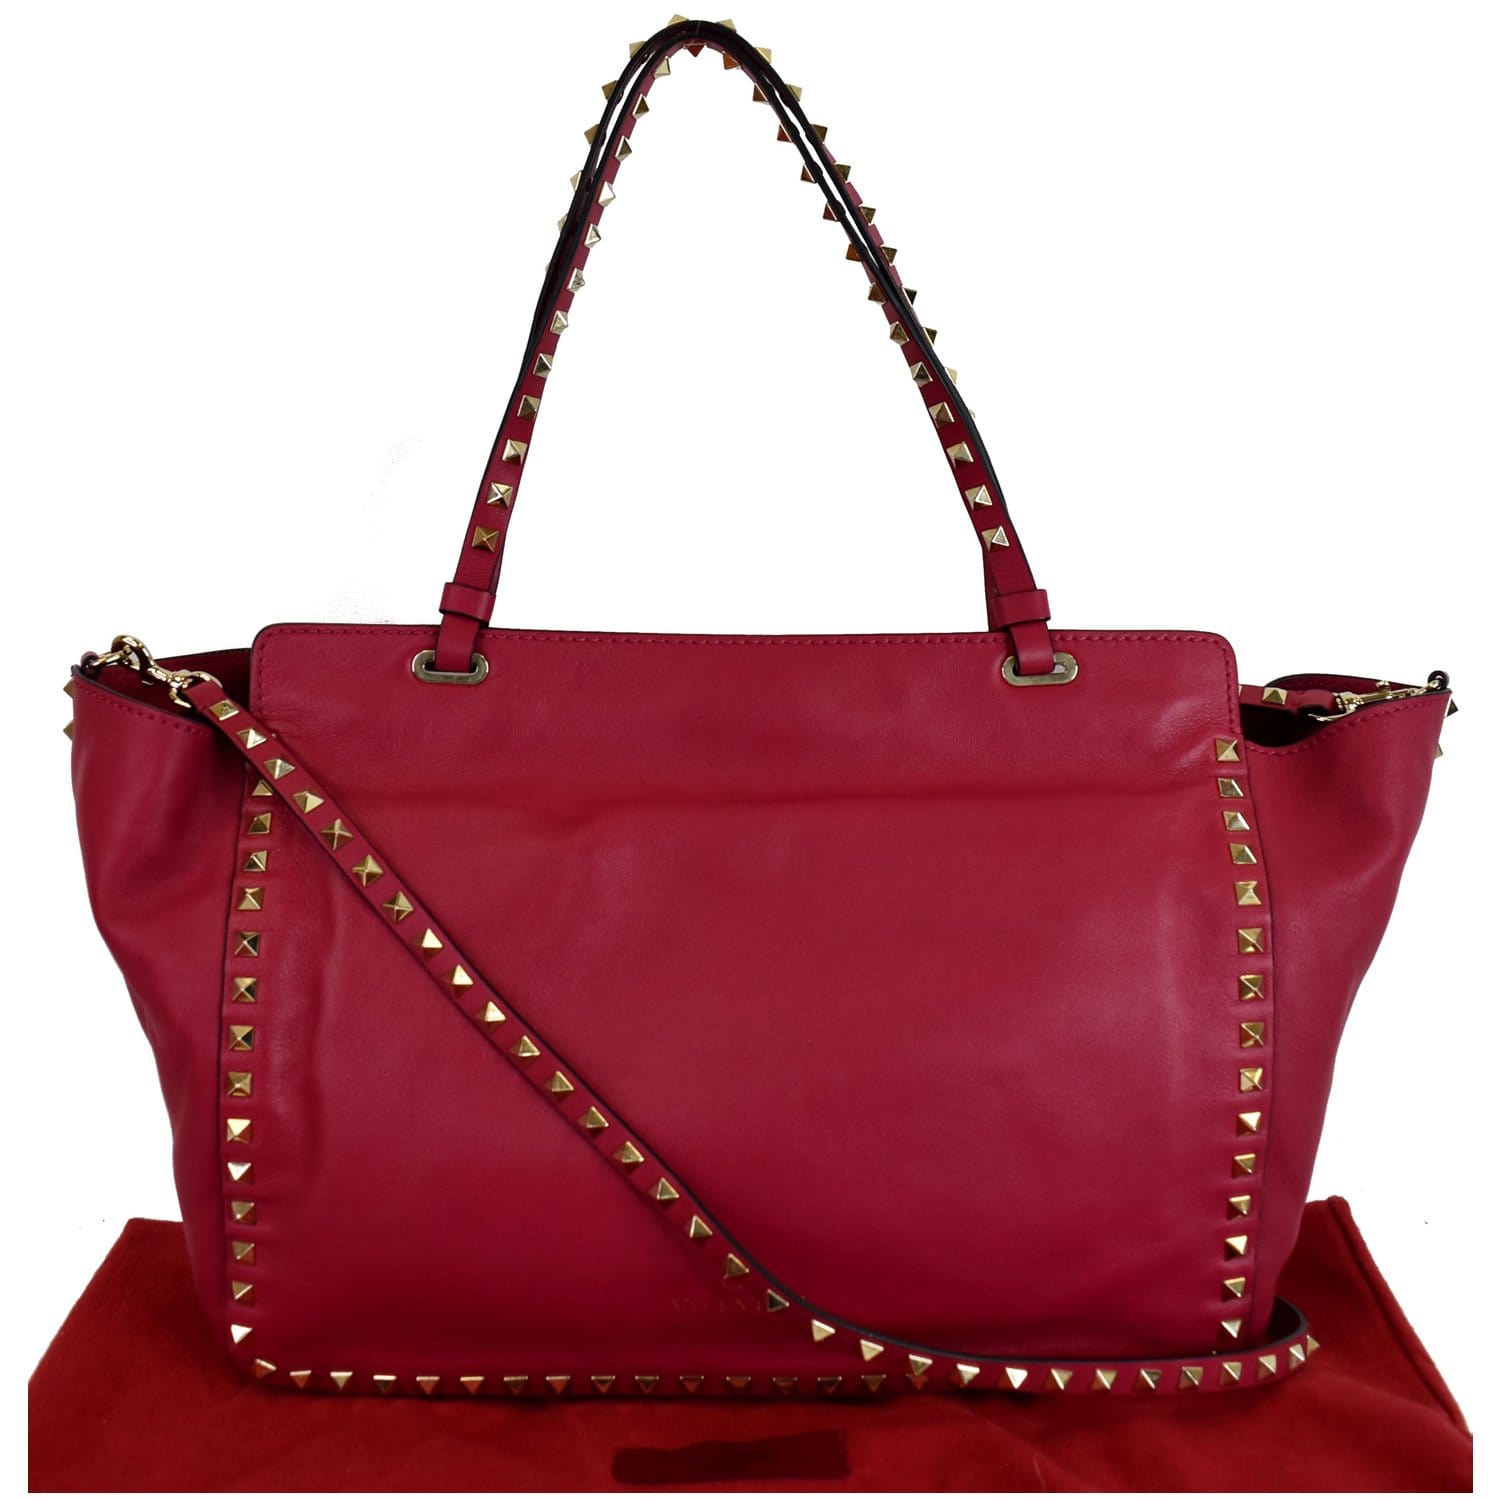 VALENTINO Rockstud Leather Medium Shoulder Bag Pink